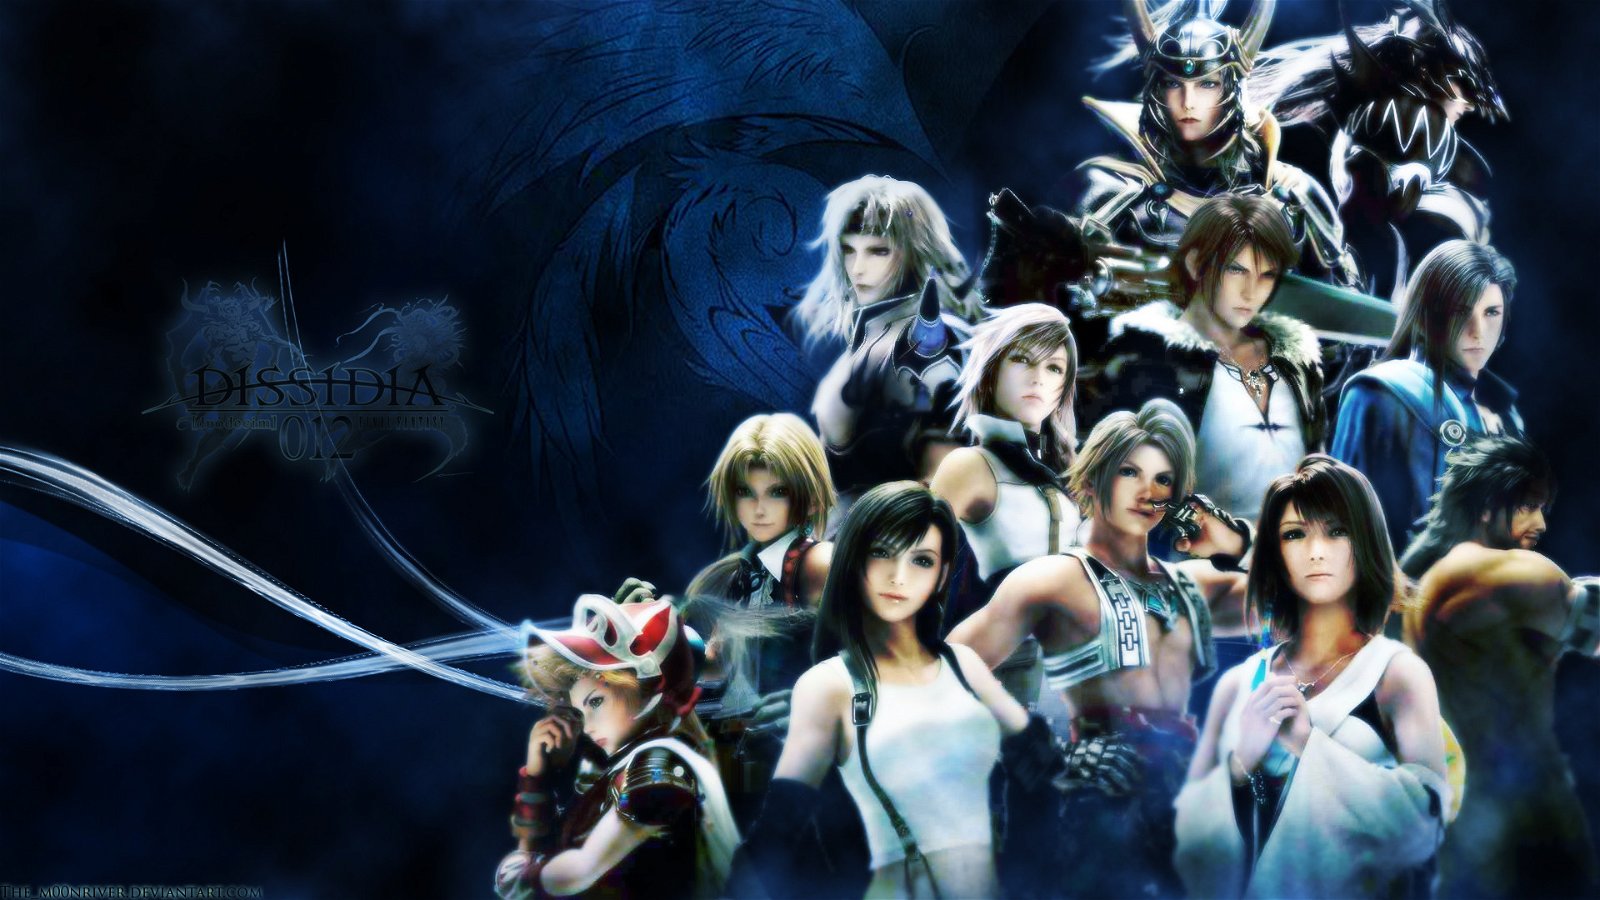 Final Fantasy nella leggenda: vola a oltre 180 milioni di copie vendute